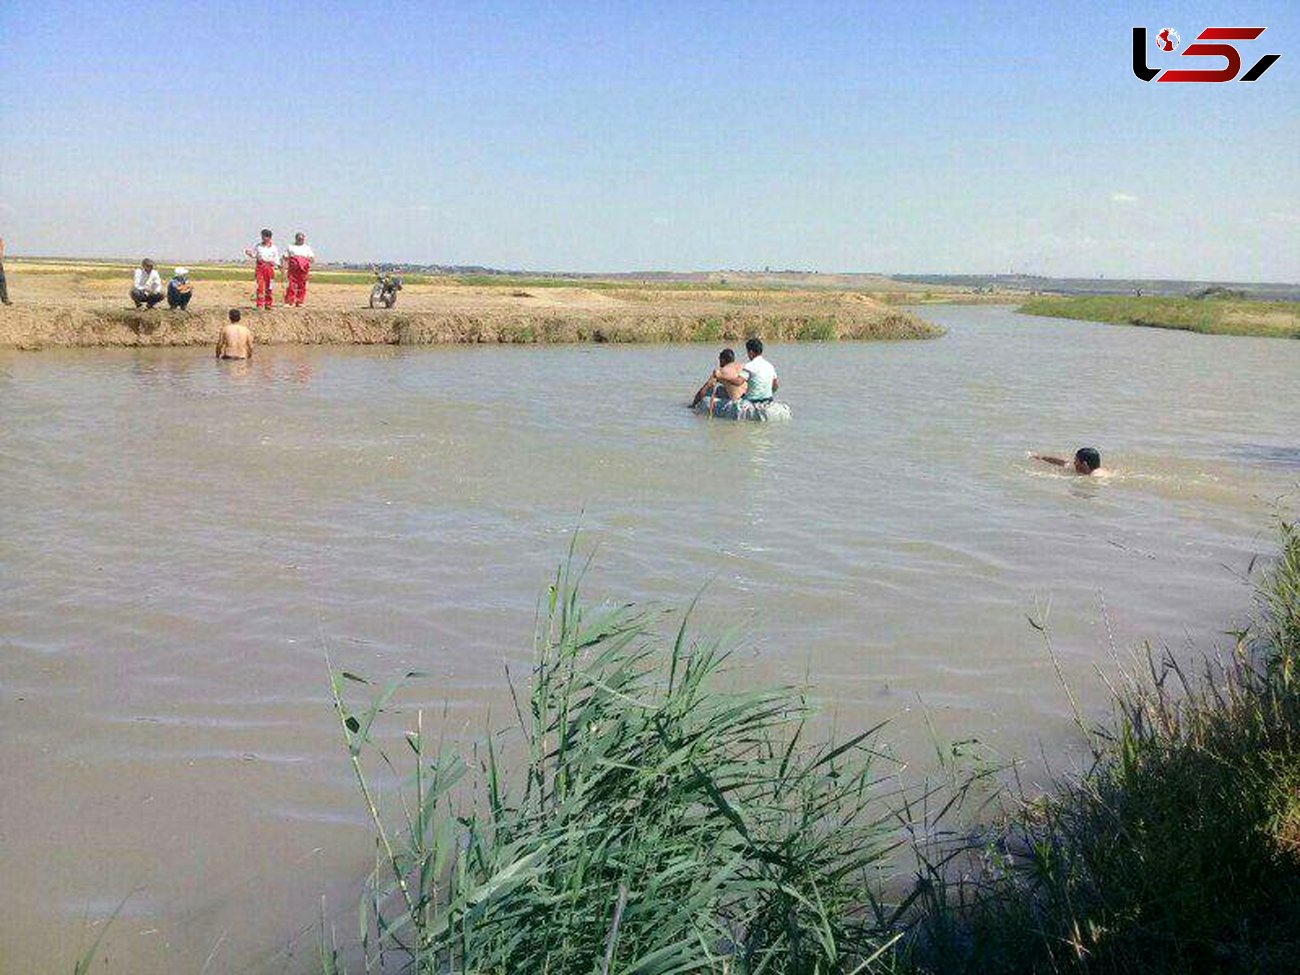 مرد 35 ساله در کانال آب شوشتر خفه شد +عکس